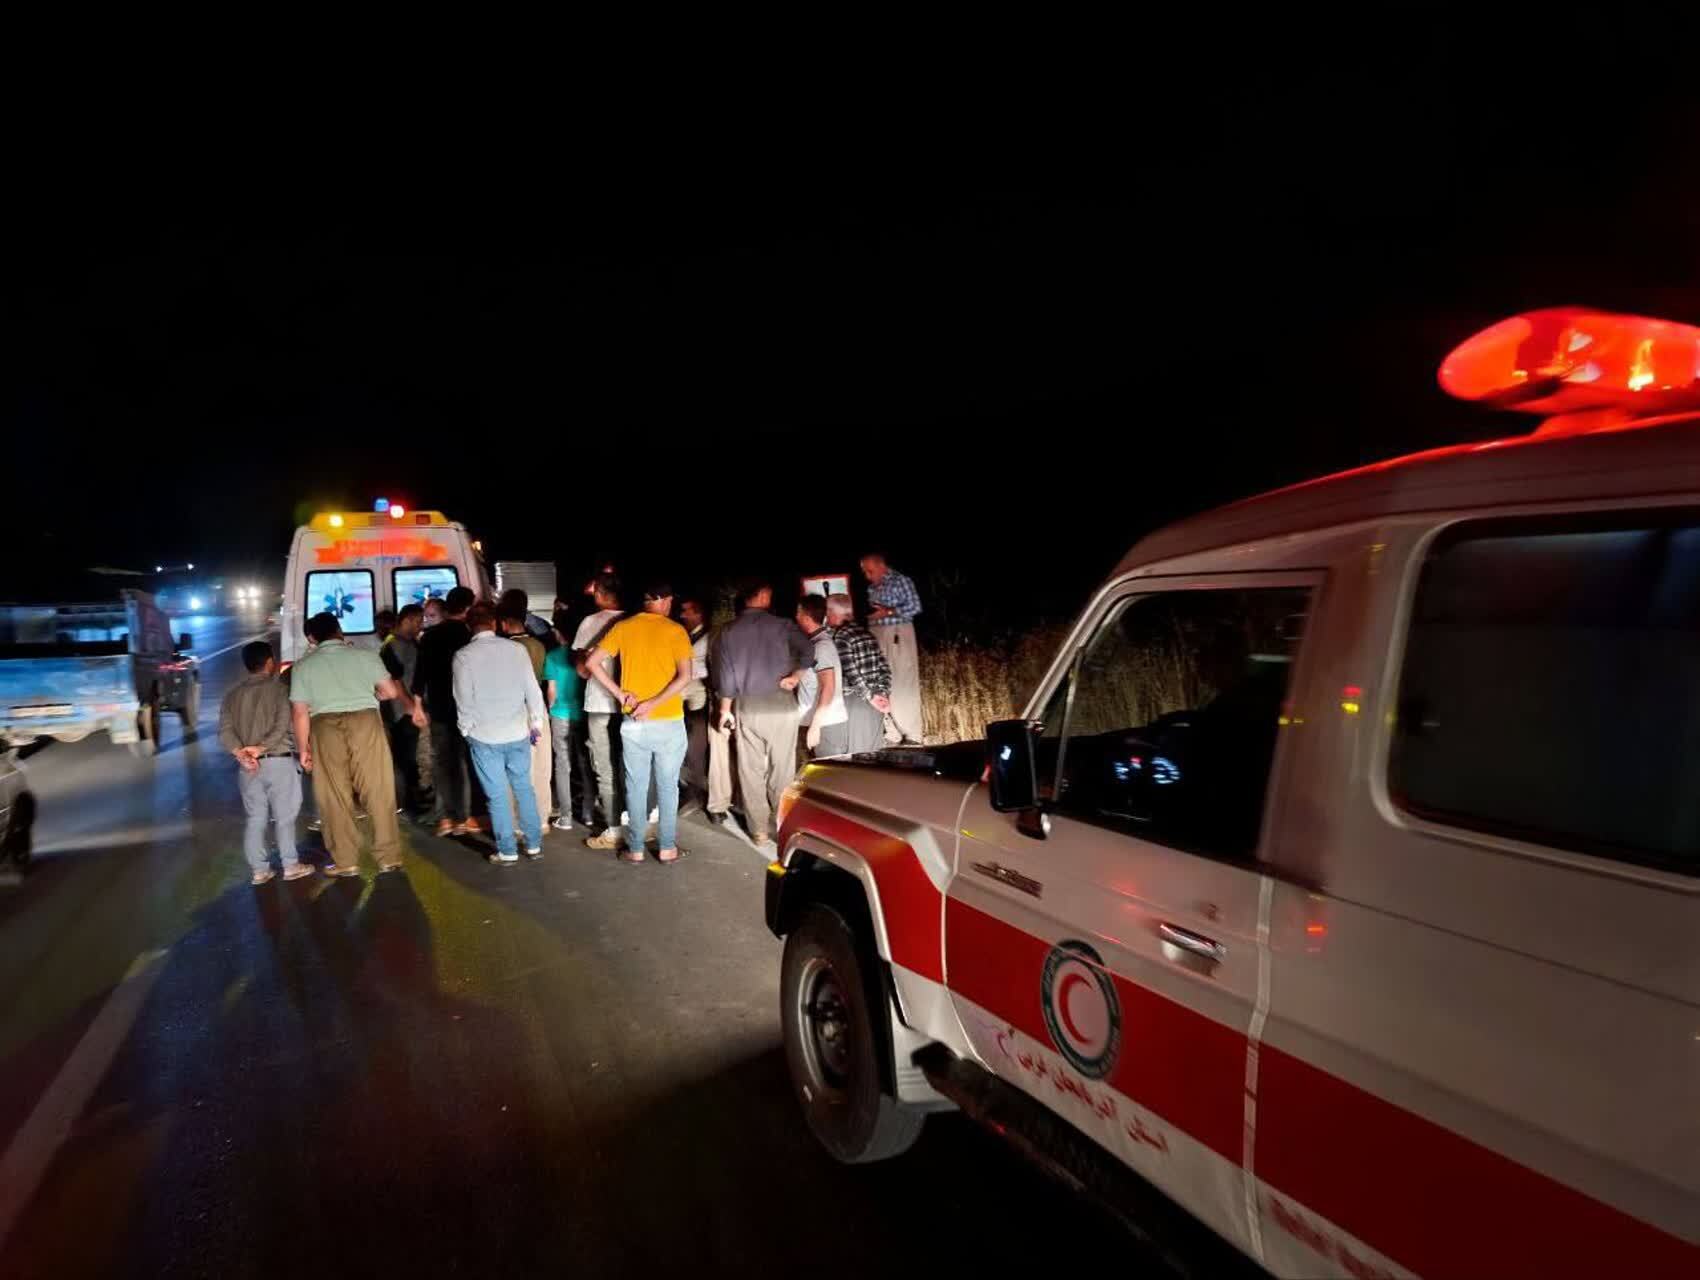 فوت عابر پیاده در هواربید پیرانشهر بر اثر تصادف